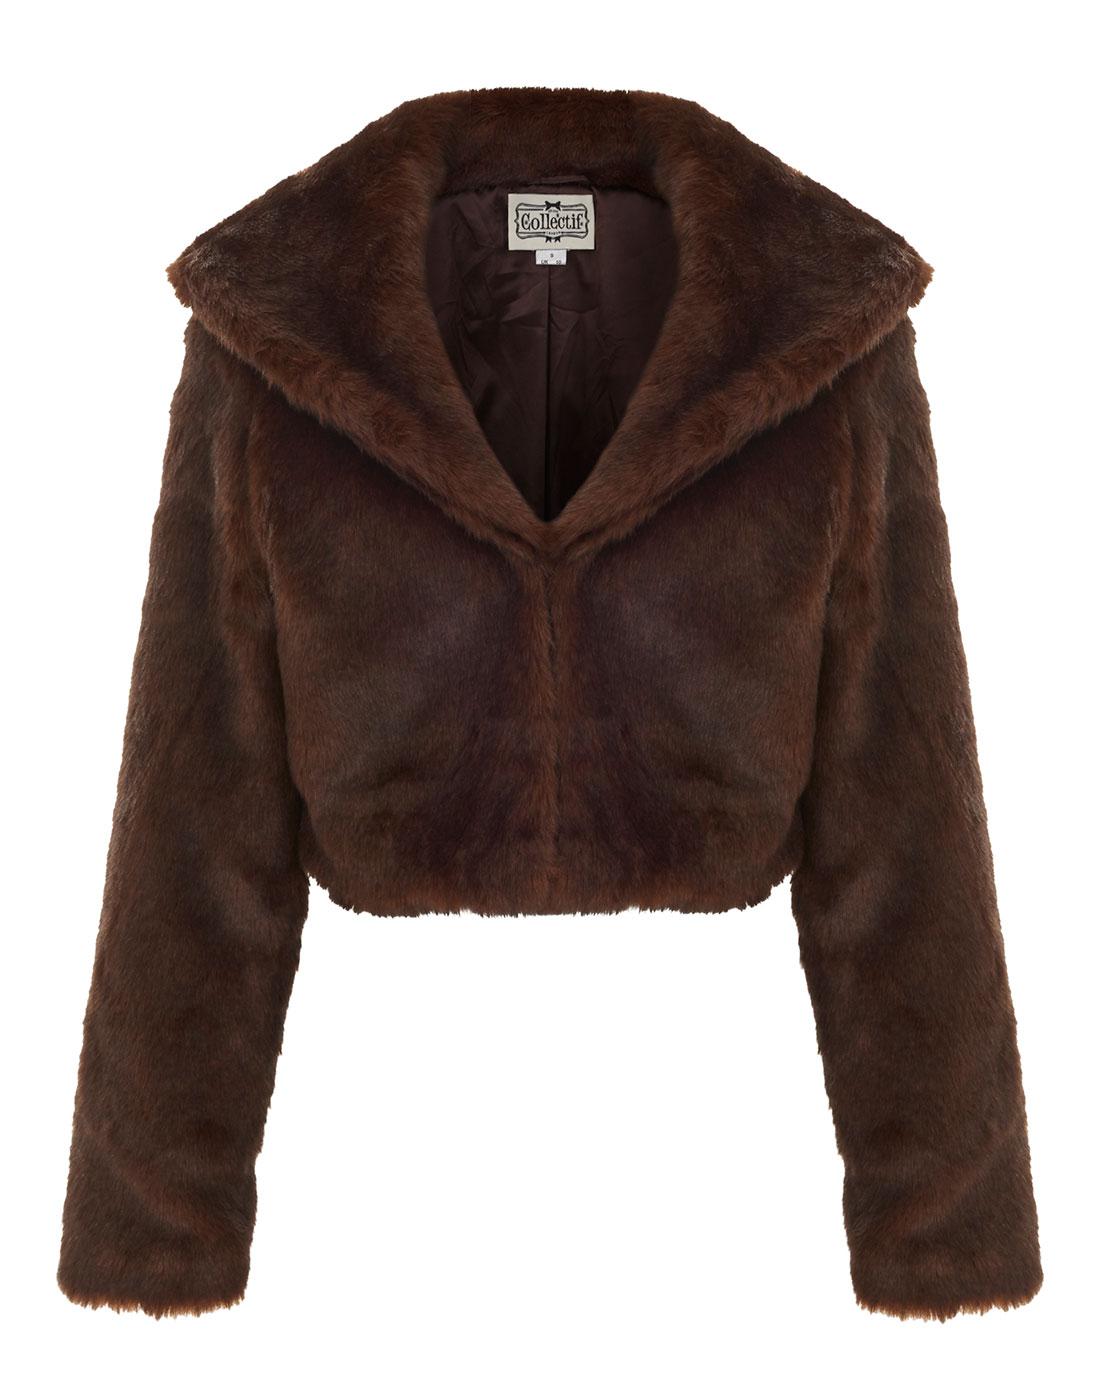 Clara COLLECTIF Retro Vintage Faux Fur Jacket